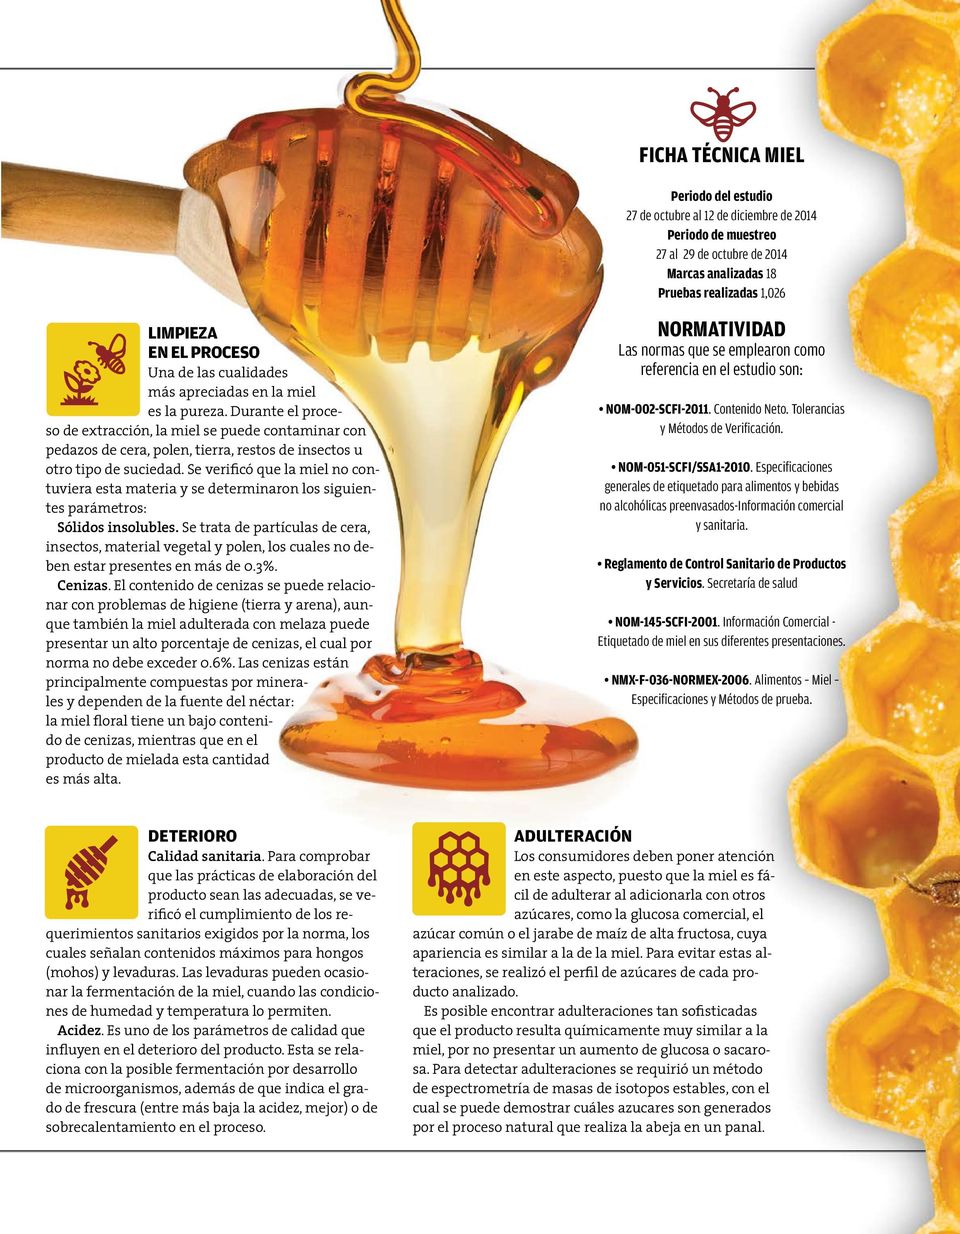 Durante el proce- so de extracción, la miel se puede contaminar con pedazos de cera, polen, tierra, restos de insectos u otro tipo de suciedad.